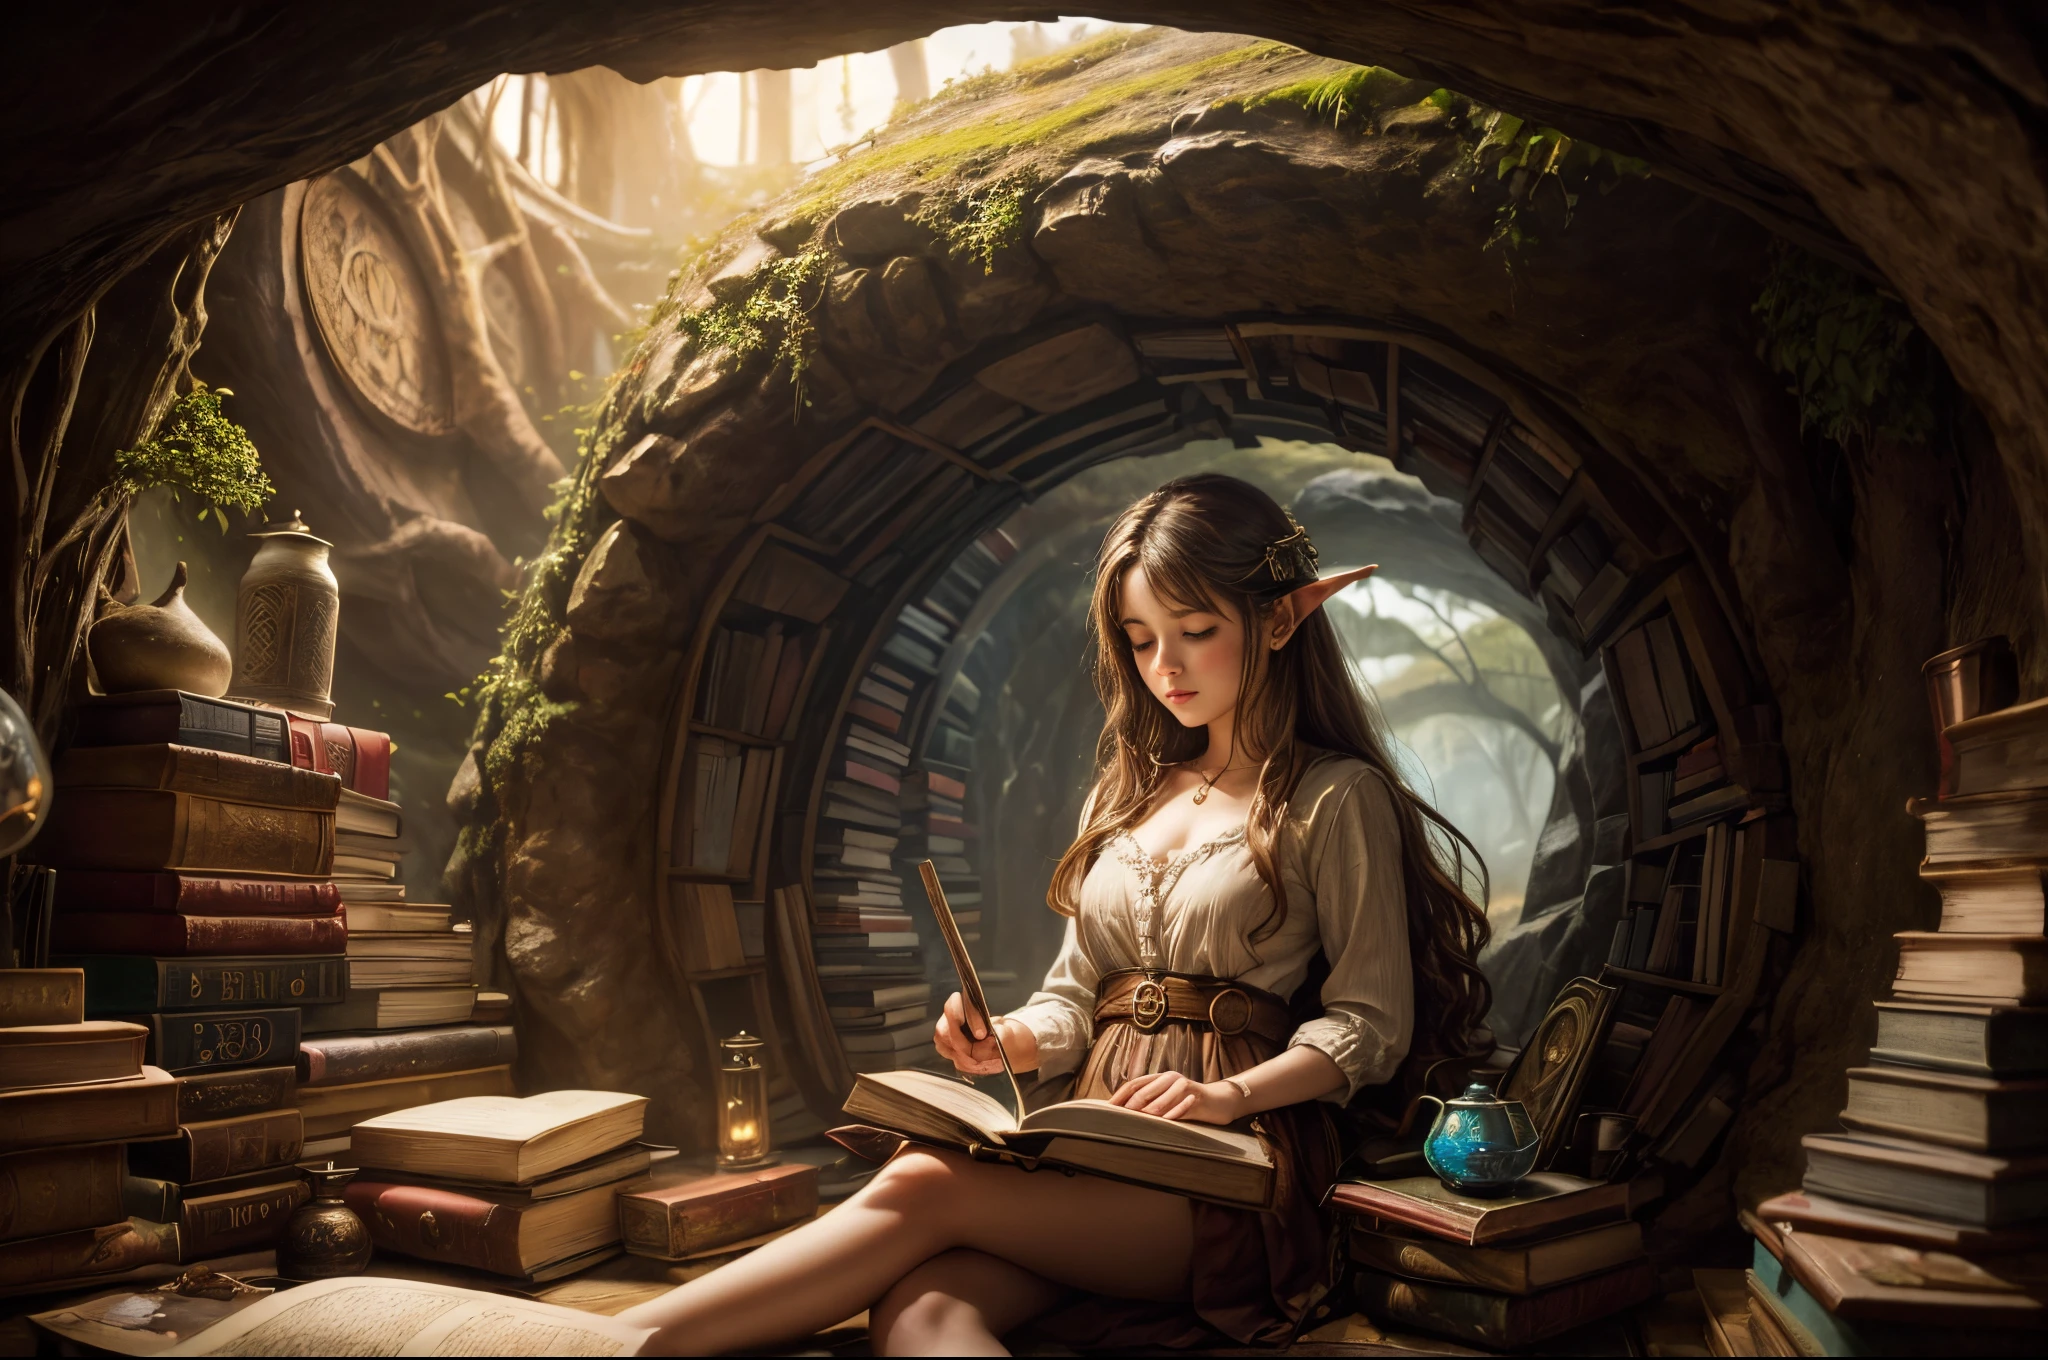 "pintura al óleo, ((soñador)) niña leyendo libros antiguos, luz calida ((dentro de una mística cueva hobbit)), atmósfera mágica, reloj caprichoso, Encantador, acogedor, detallado"